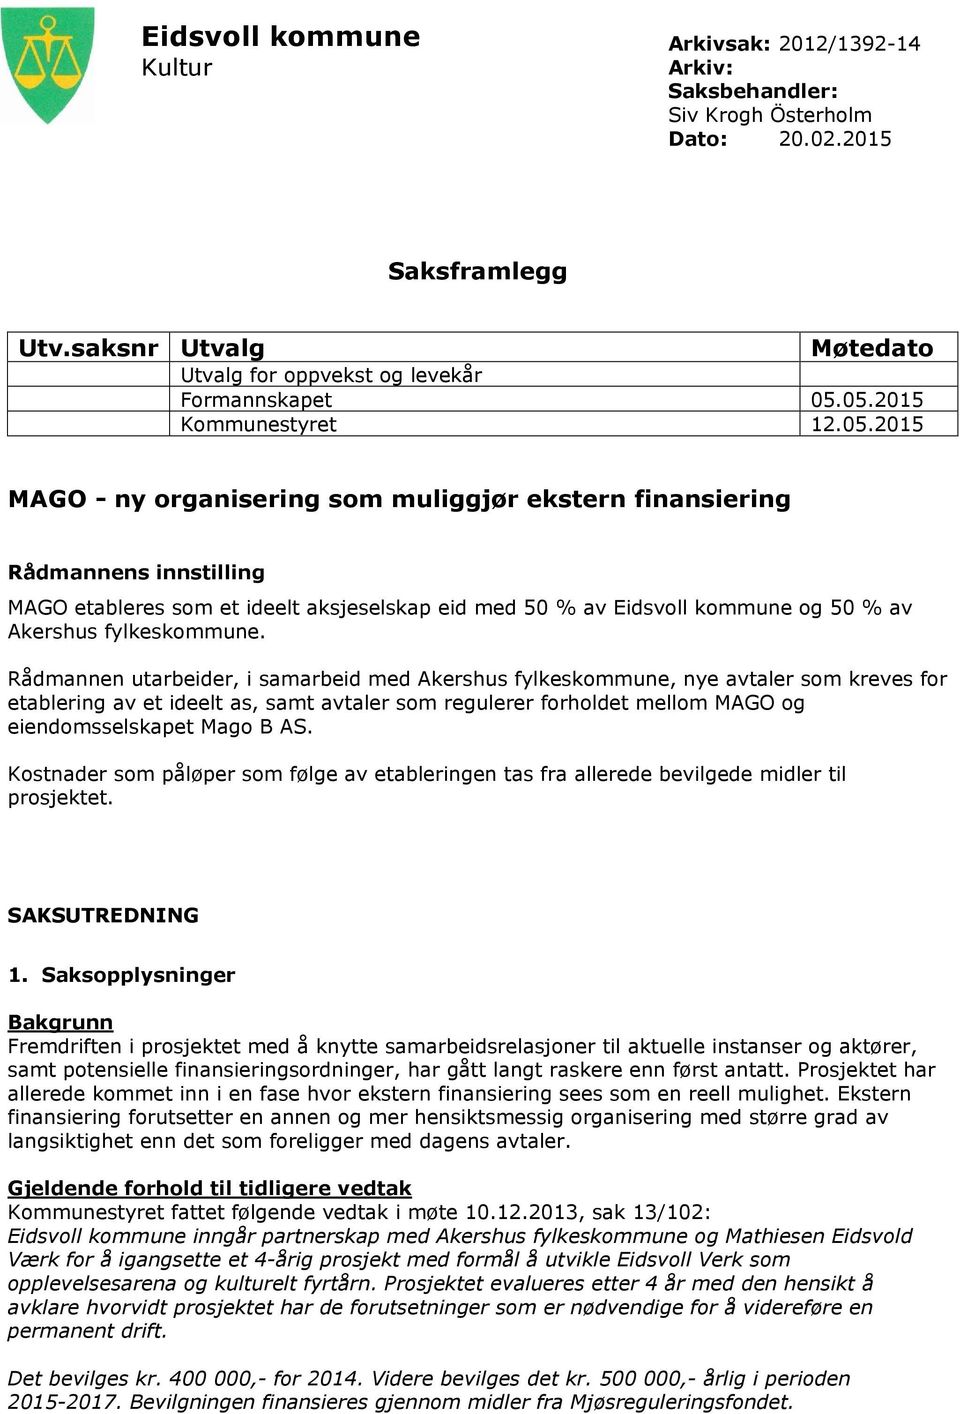 Rådmannen utarbeider, i samarbeid med Akershus fylkeskommune, nye avtaler som kreves for etablering av et ideelt as, samt avtaler som regulerer forholdet mellom MAGO og eiendomsselskapet Mago B AS.